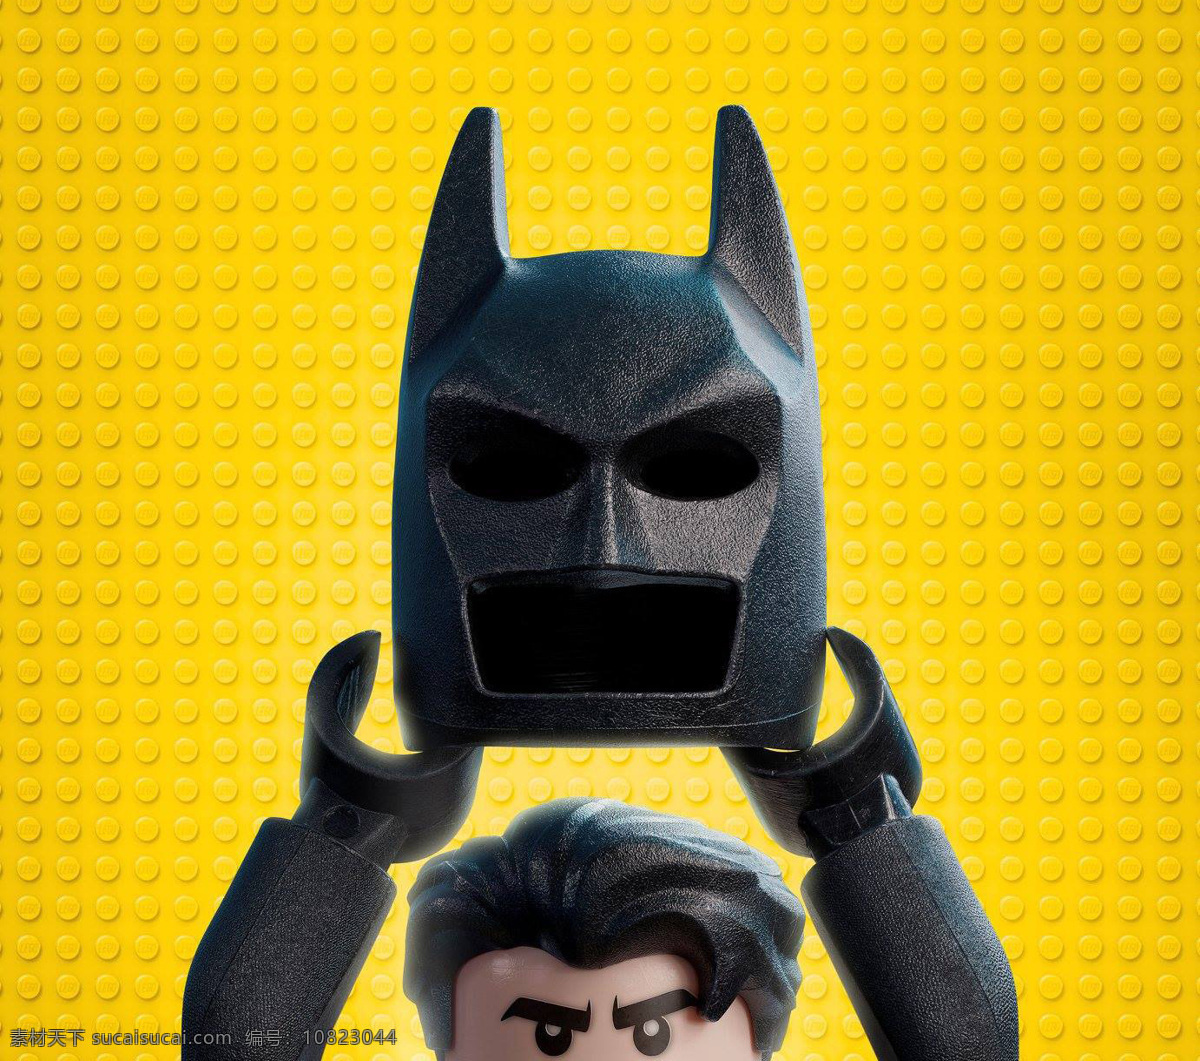 乐高大电影 蝙蝠侠 华纳出品 动画 动画片 搞笑 头盔 黑色 面具 超人 电影 小男孩 动漫动画 动漫人物